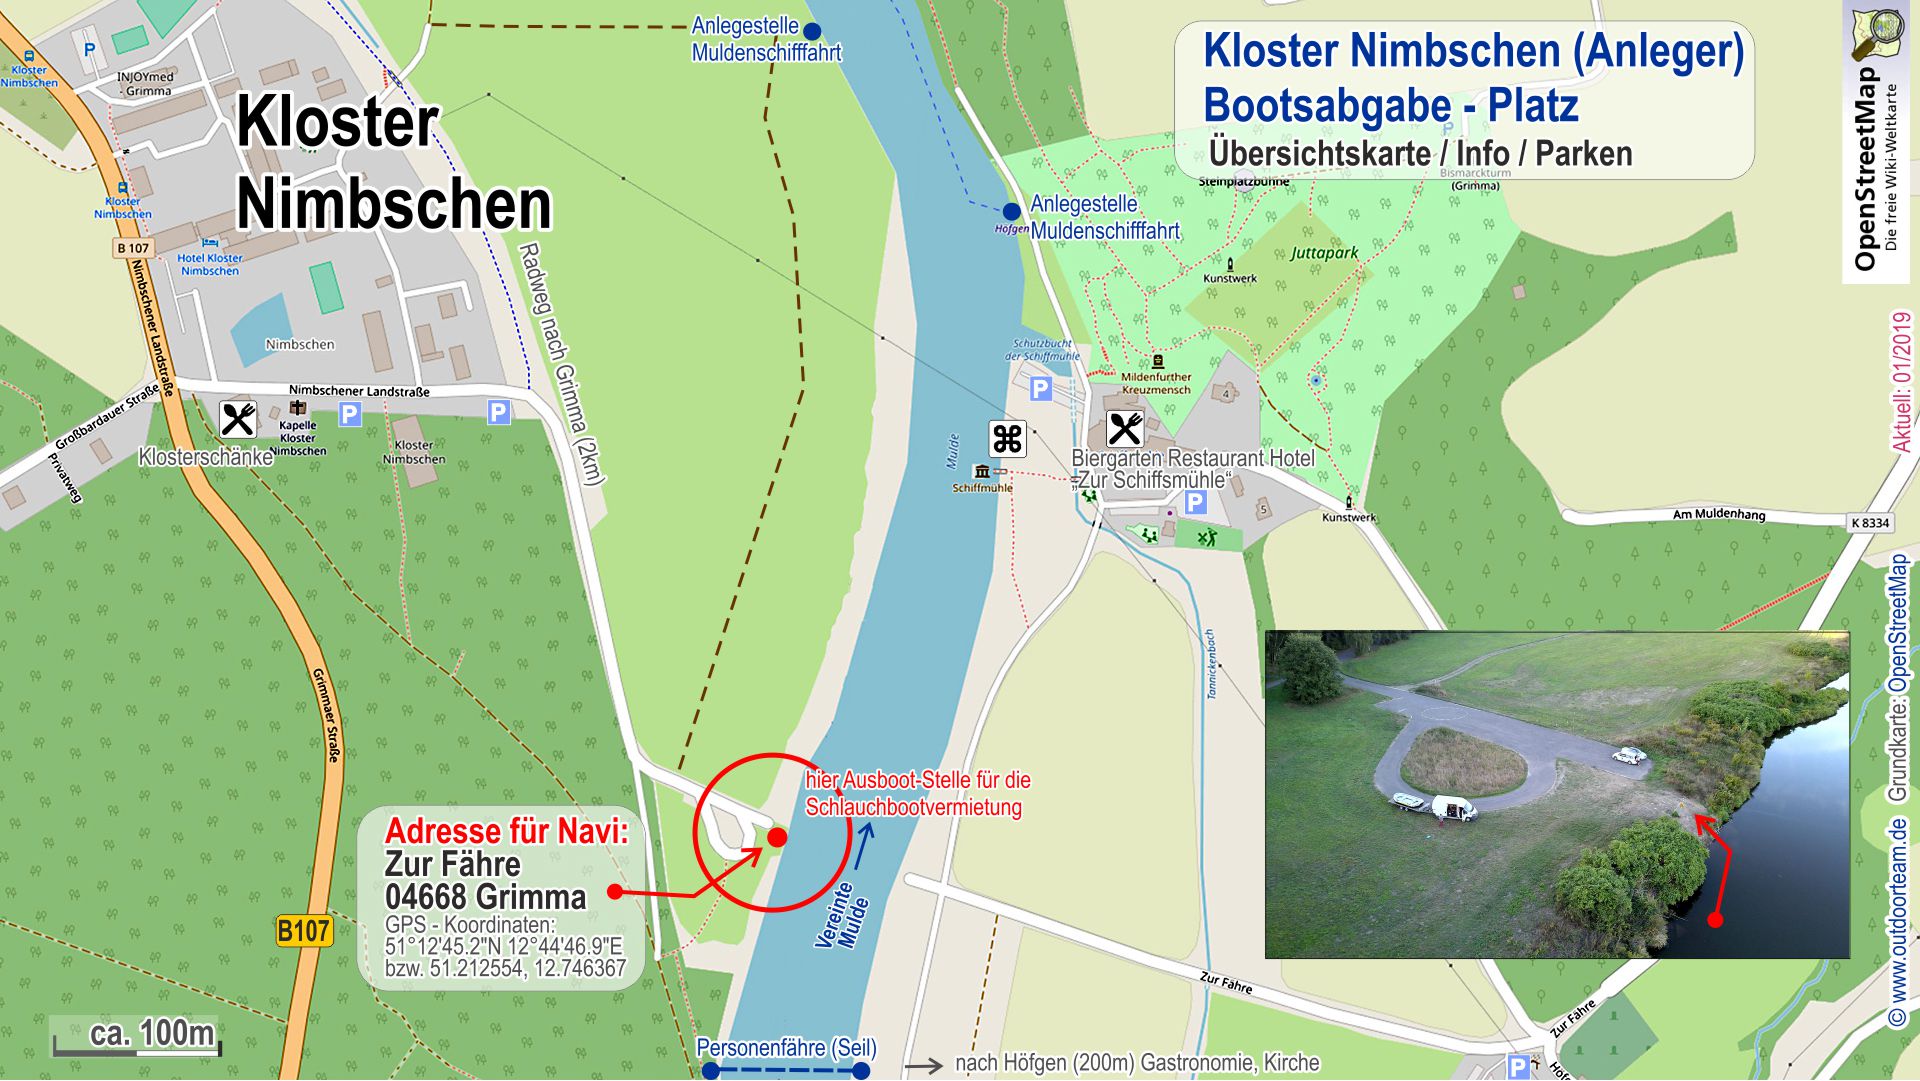 Detailkarte Anlegebereich (linke Uferseite) Kloster Nimbschen und (rechte Uferseite) Hotel und Biergarten Schiffsmühle - von hier sind es noch 2,5 km bis nach Grimma.